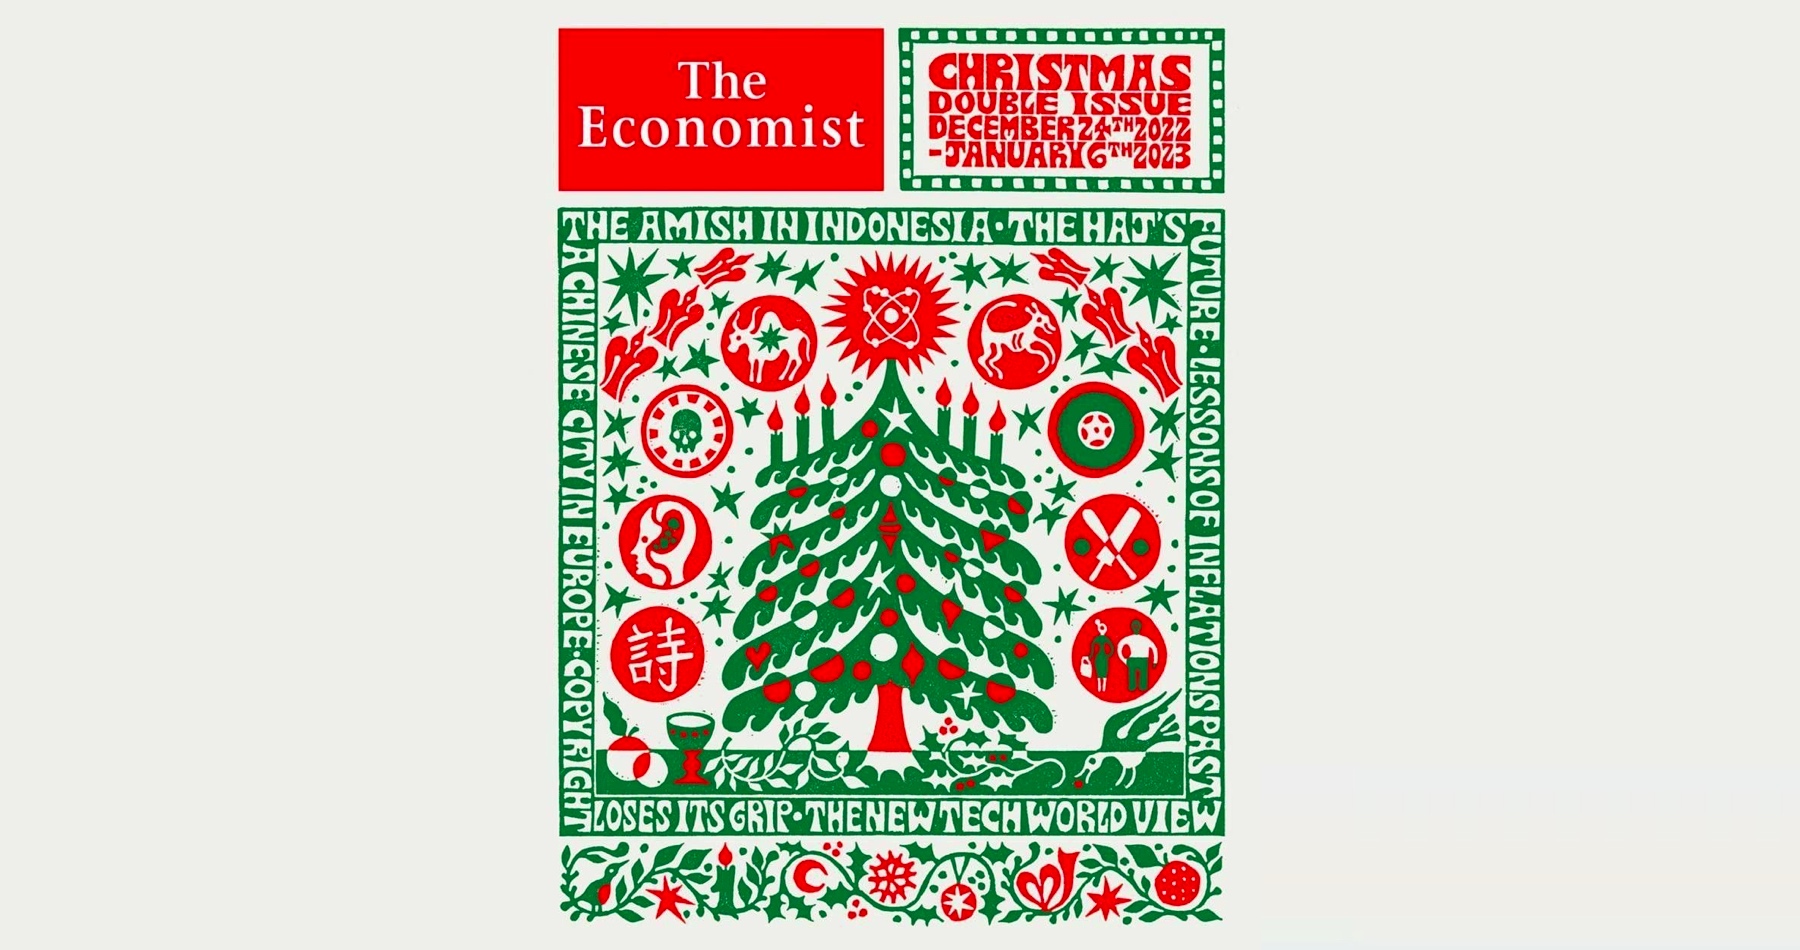 Экономика журнал 2023. The Economist 2023 обложка. Обложка журнала экономист 2023. Обложка экономист на 2023 год. Новогодняя обложка экономист 2023.